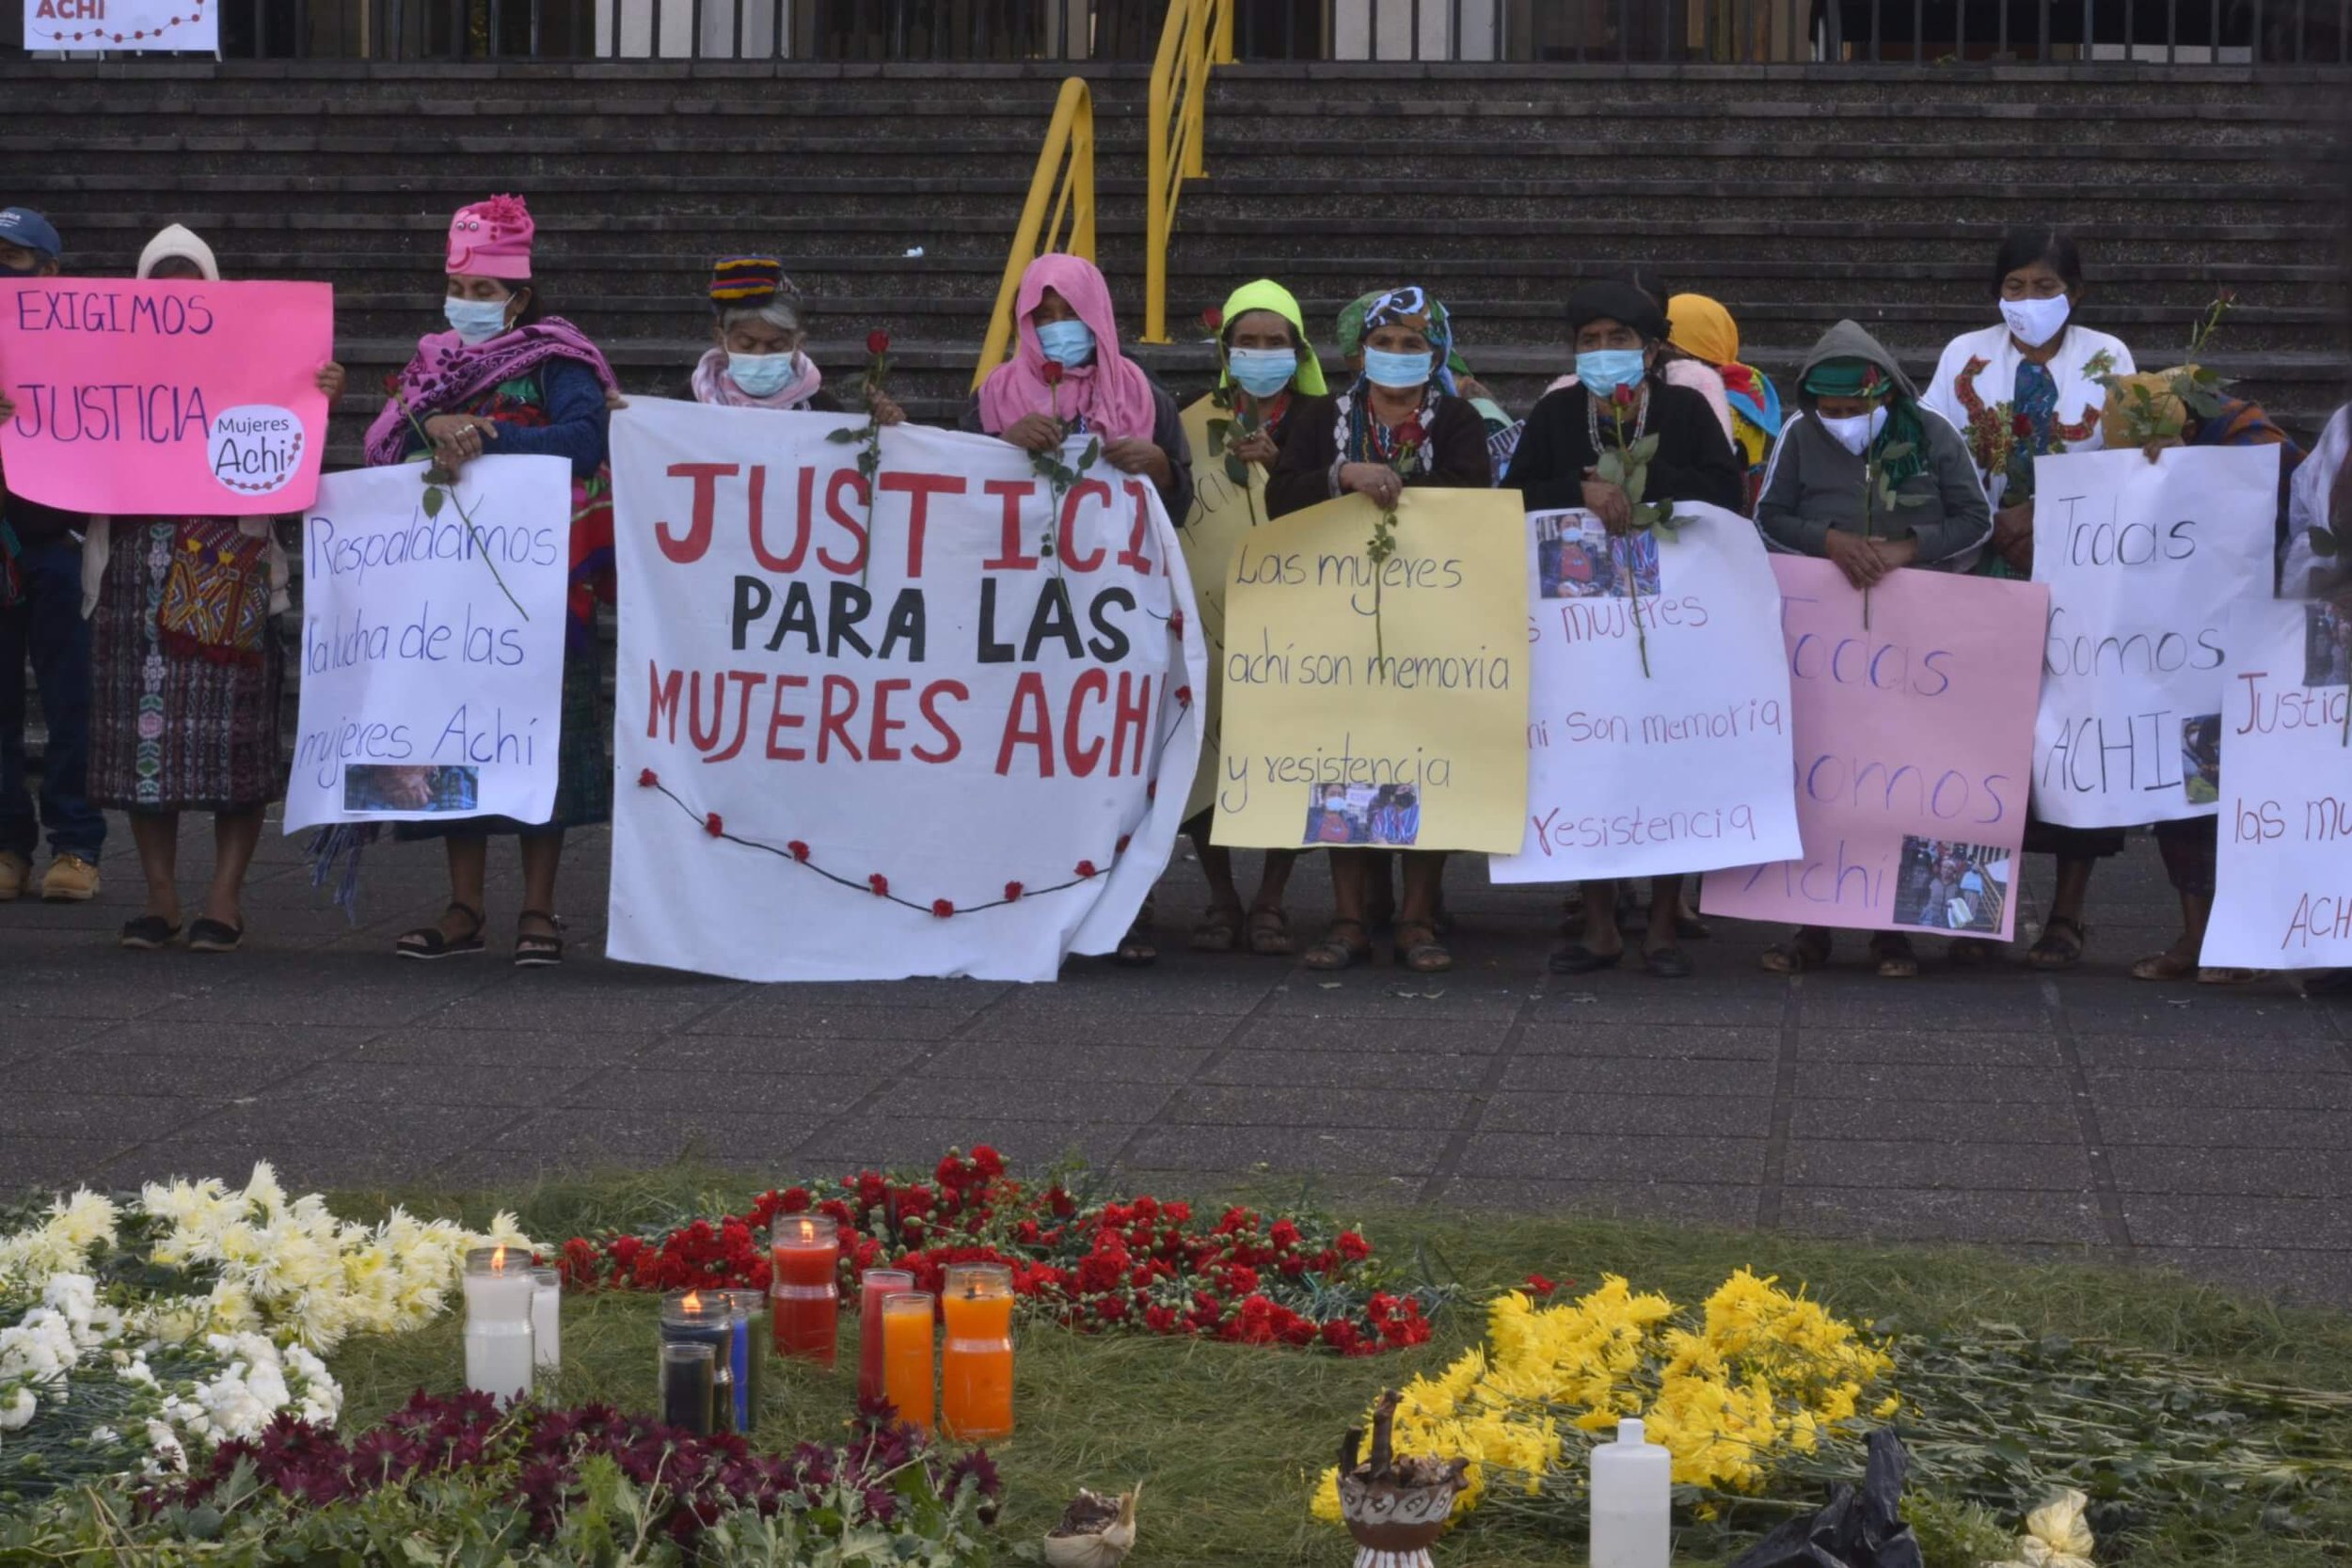  Con carteles y rosas rojas, varias mujeres indígenas transmiten  mensajes de apoyo para las 36 mujeres Achi, quienes empezaron el camino  de la justicia contra los cinco expatrulleros desde 2011.  